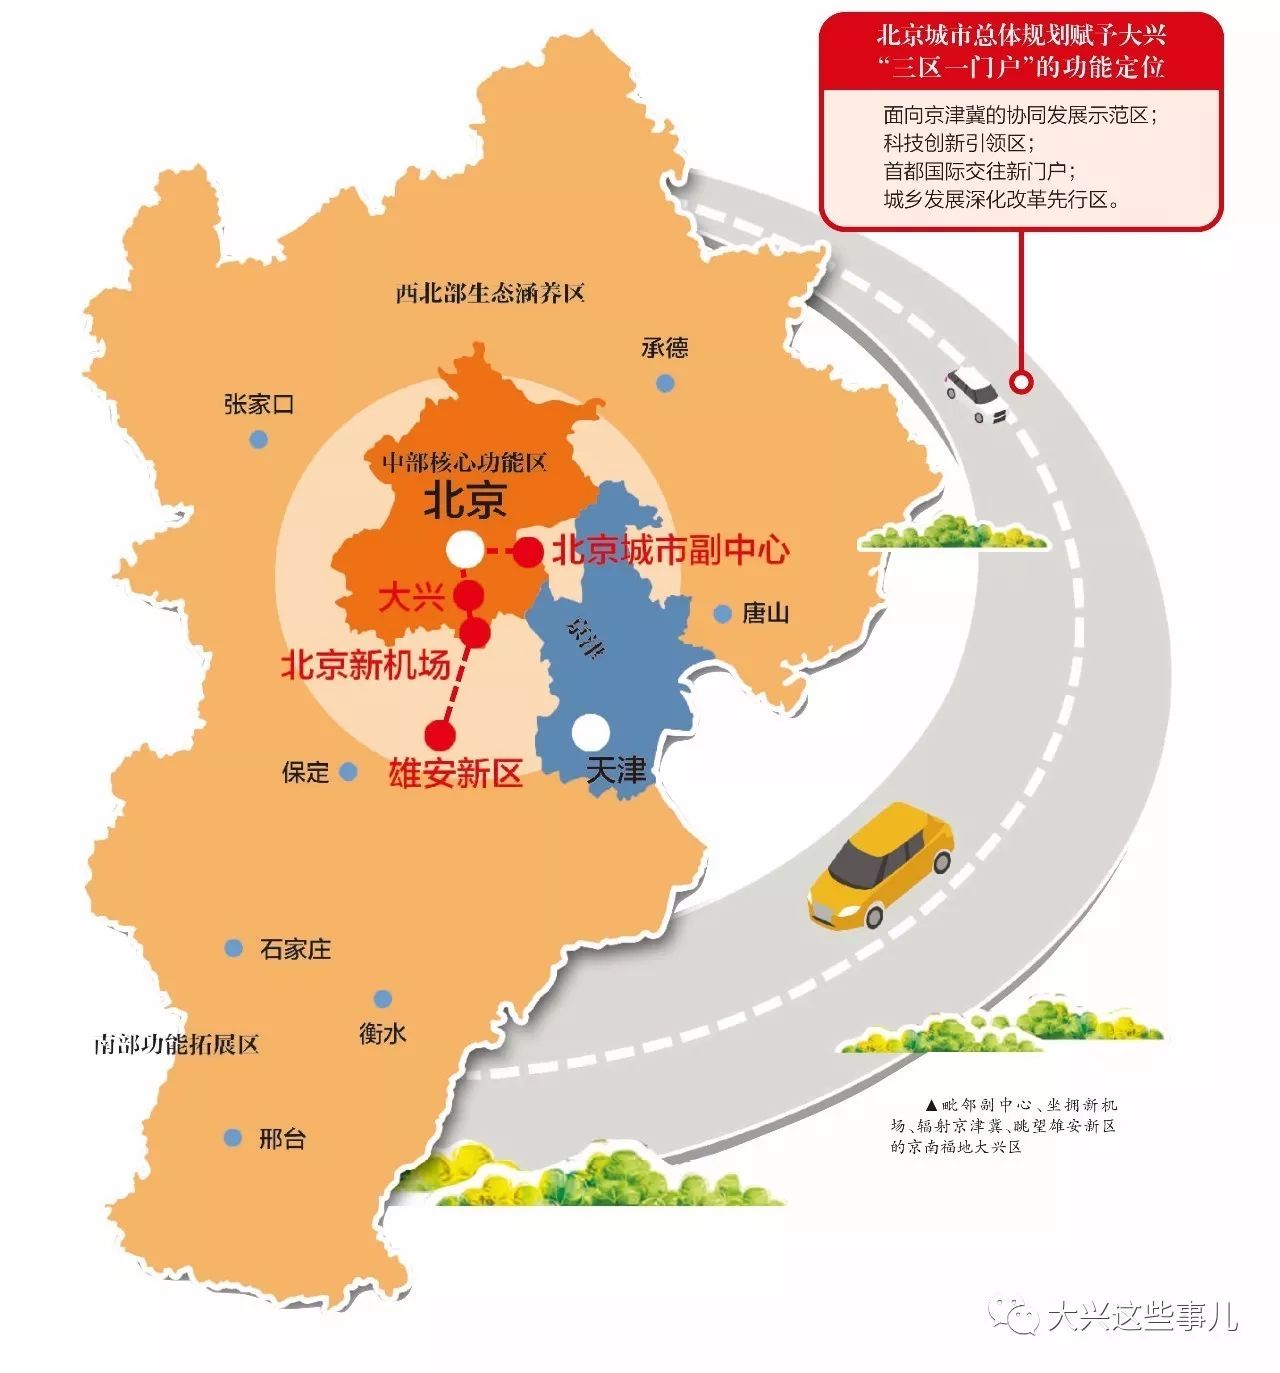 城市总体规划赋予了大兴全新的功能定位,面向京津冀的协同发展示范区